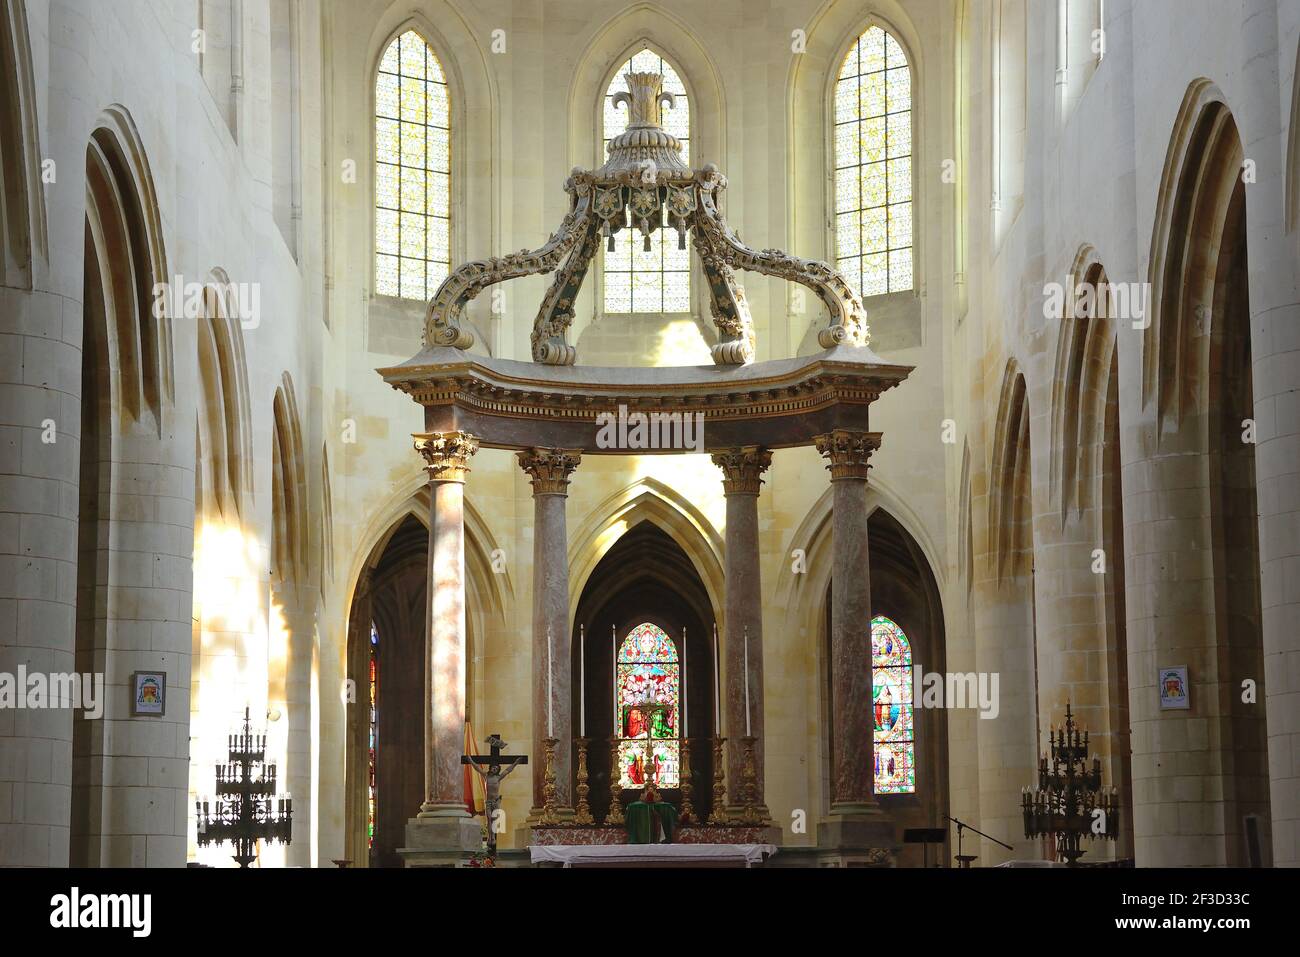 Saintes (Francia centro-occidentale): Vista interna della Cattedrale di San Pietro con il coro e l'altare a baldacchino Foto Stock